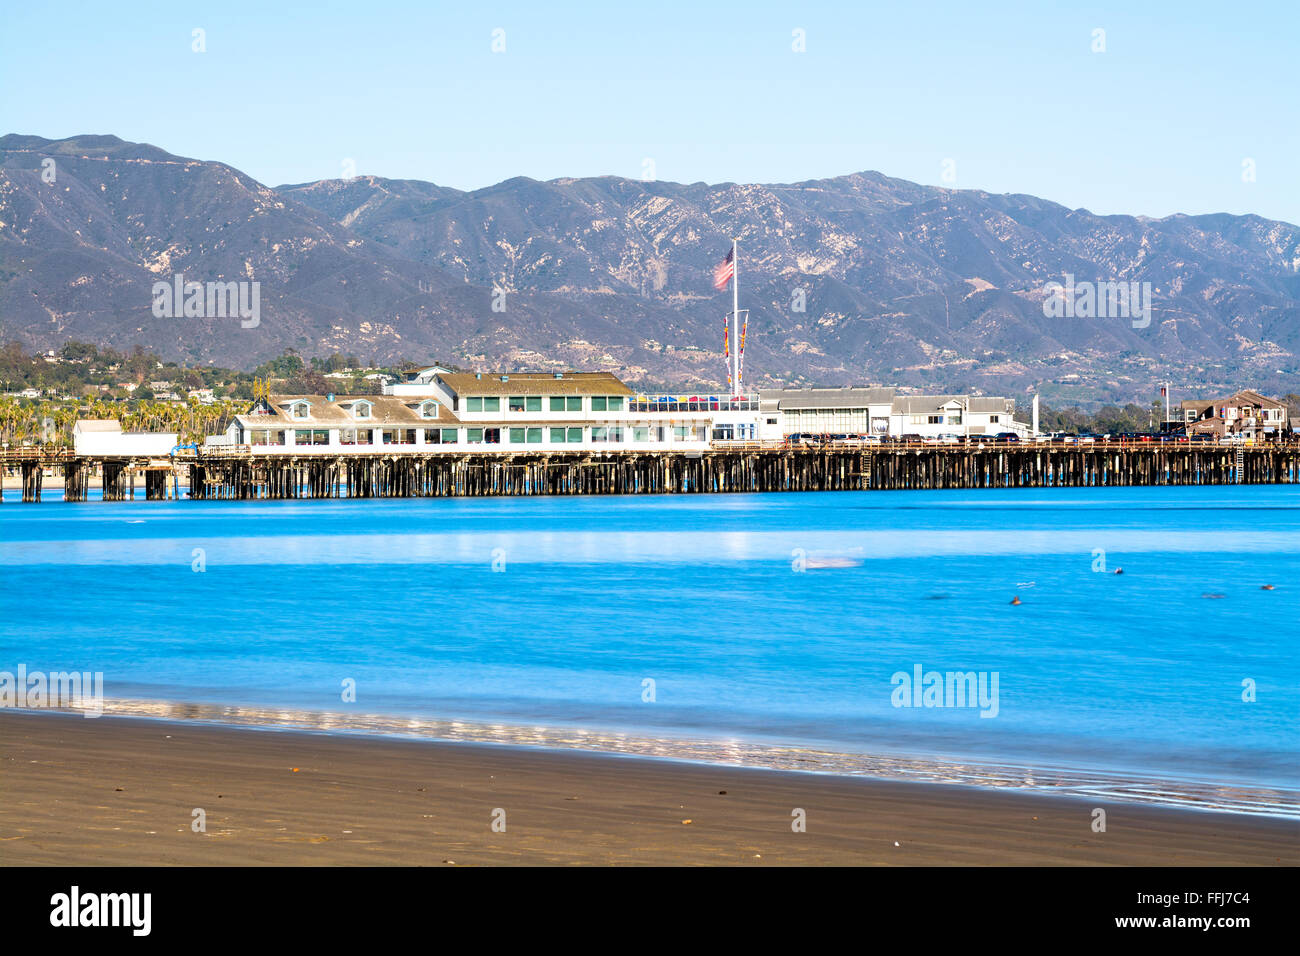 Bild von einer langen Belichtungszeit in Santa Barbara Hafen Kalifornien mit berühmten Stearns Wharf Futter das blaue Wasser. Stockfoto